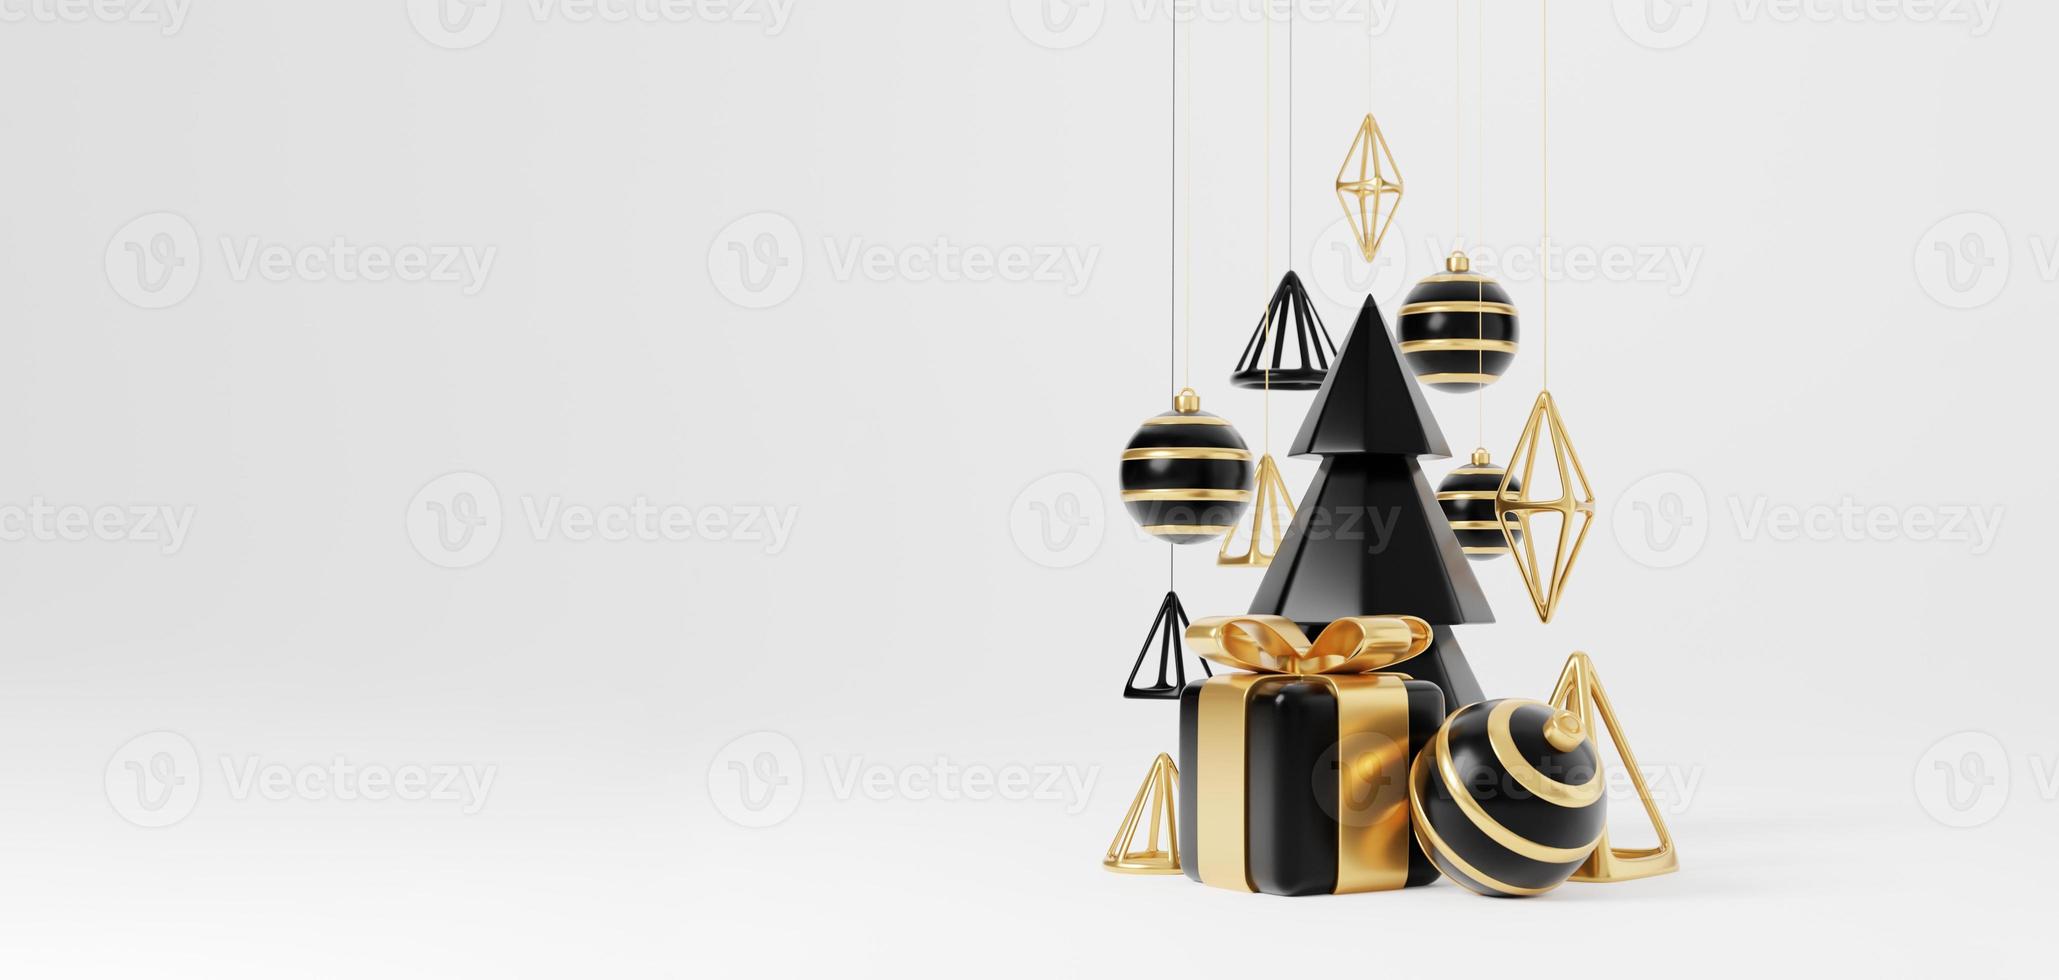 bannière de rendu 3d de luxe de Noël ou carte de voeux. décoration minimaliste moderne du nouvel an et de noël en or et noir avec arbre, bonbons, boule, coffret cadeau sur fond noir photo